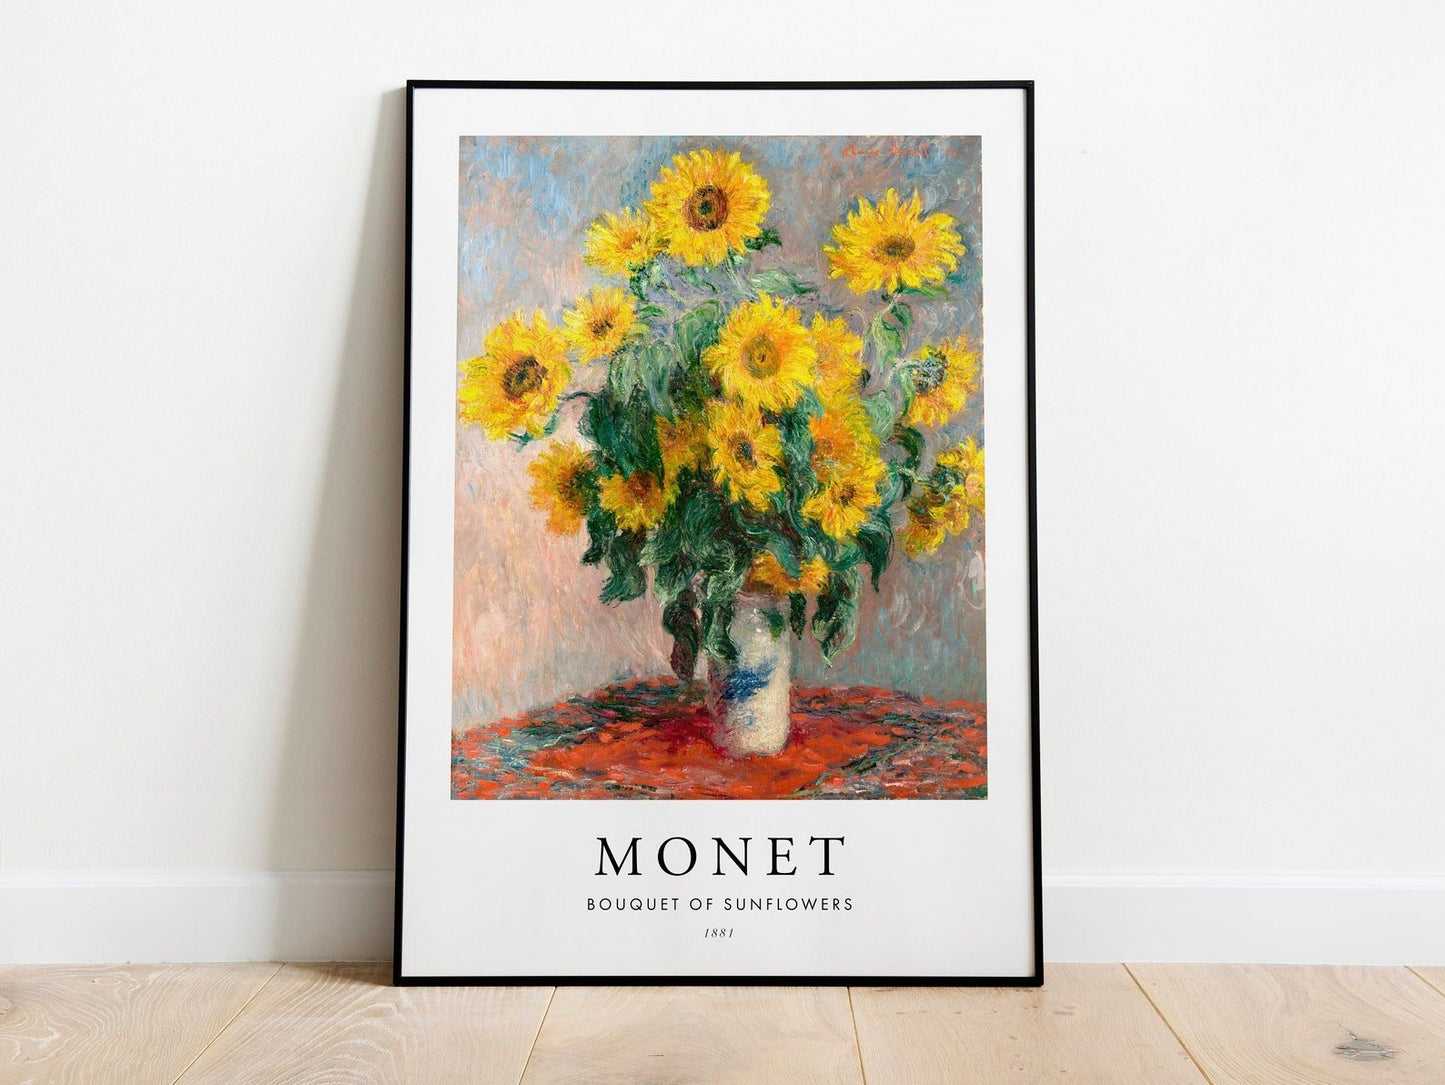 CLAUDE MONET - Bouquet De Tournesols (Style Affiche)